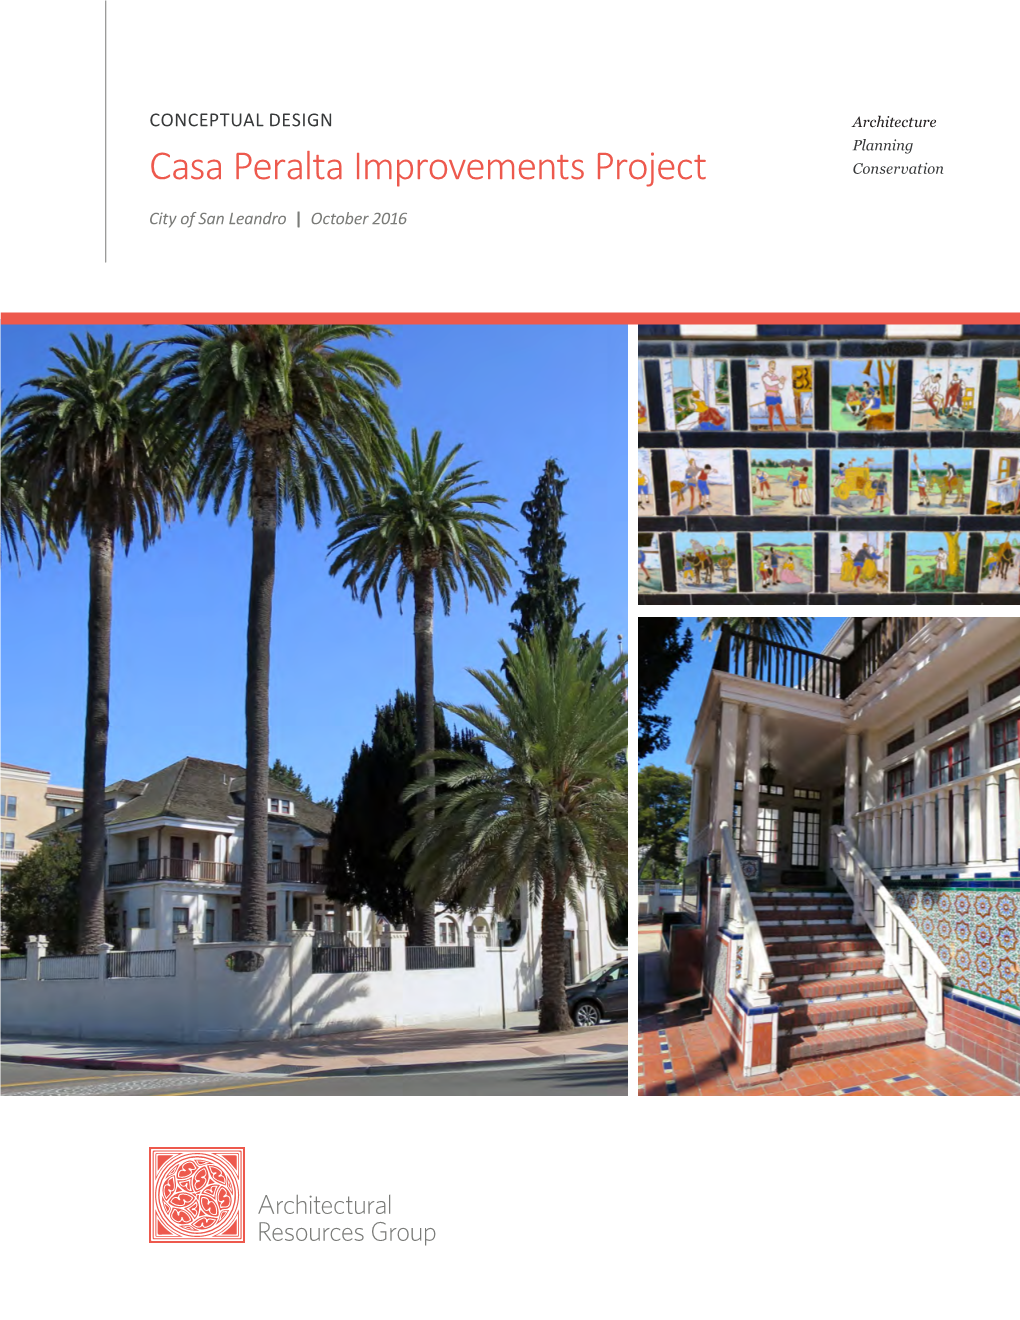 Casa Peralta Improvements Project Conservation